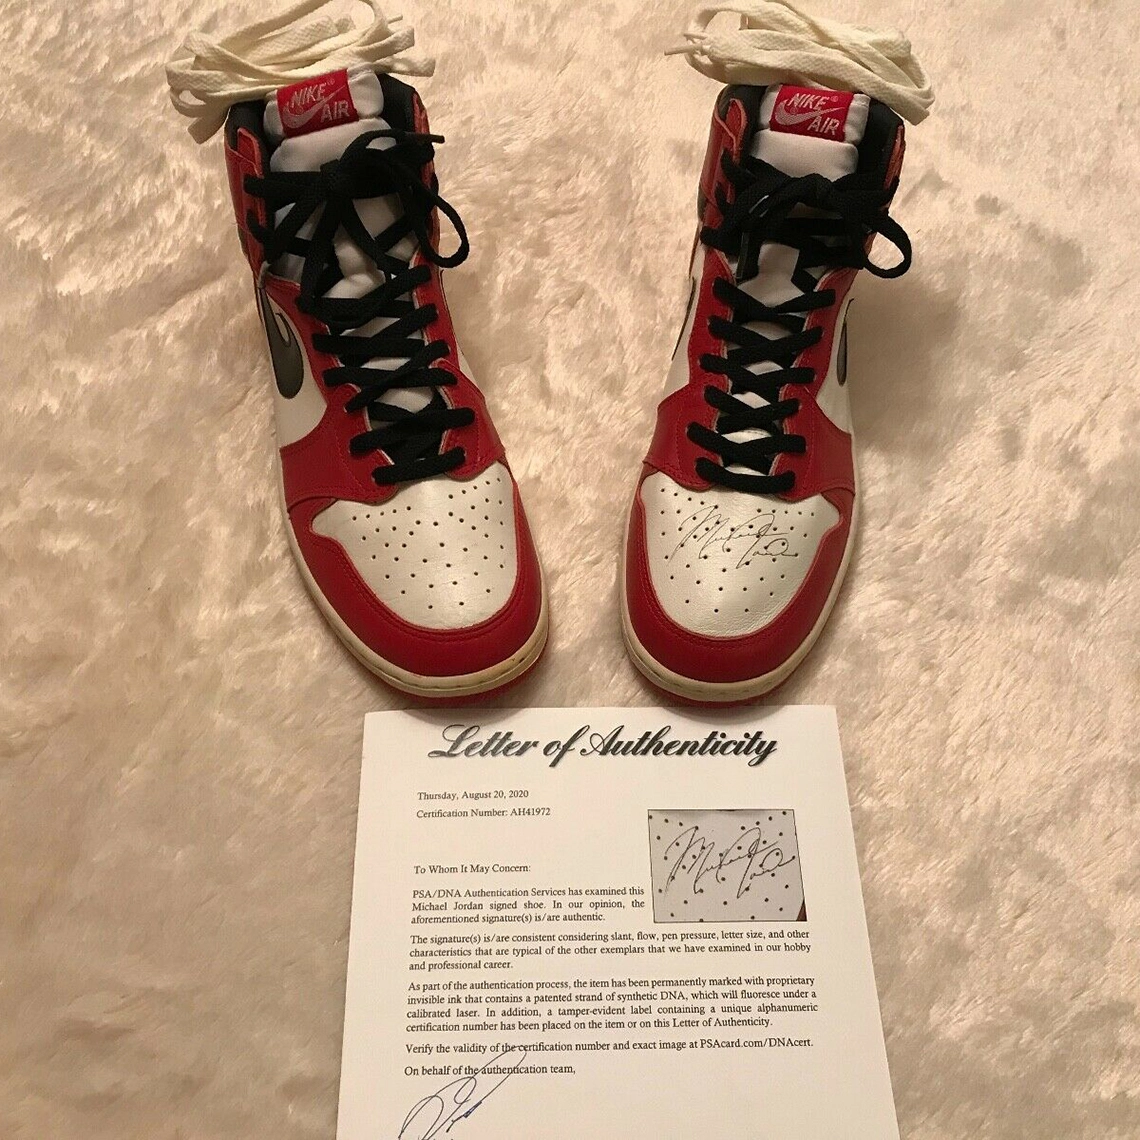 MICHAEL JORDAN Rookie 1985 signed AIR JORDAN 1 sneakers PSA/DNA certified